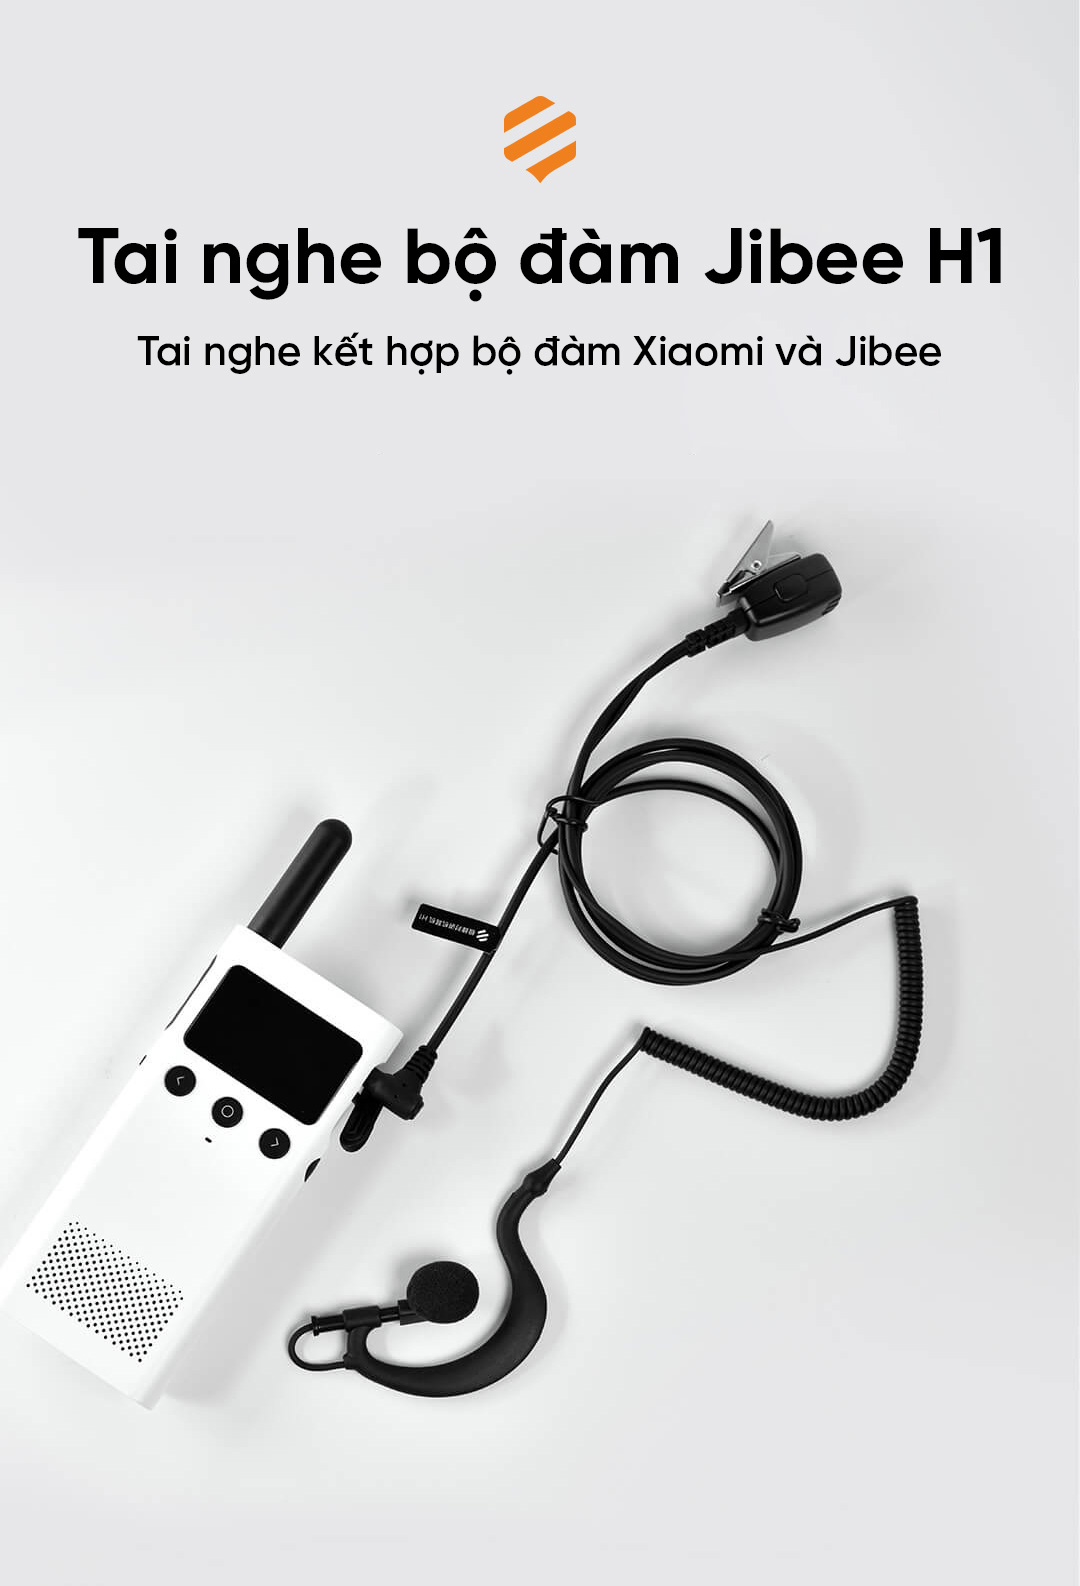 Tai nghe bộ đàm Xiaomi Jibee H1 hỗ trợ đàm thoại xa dễ dàng